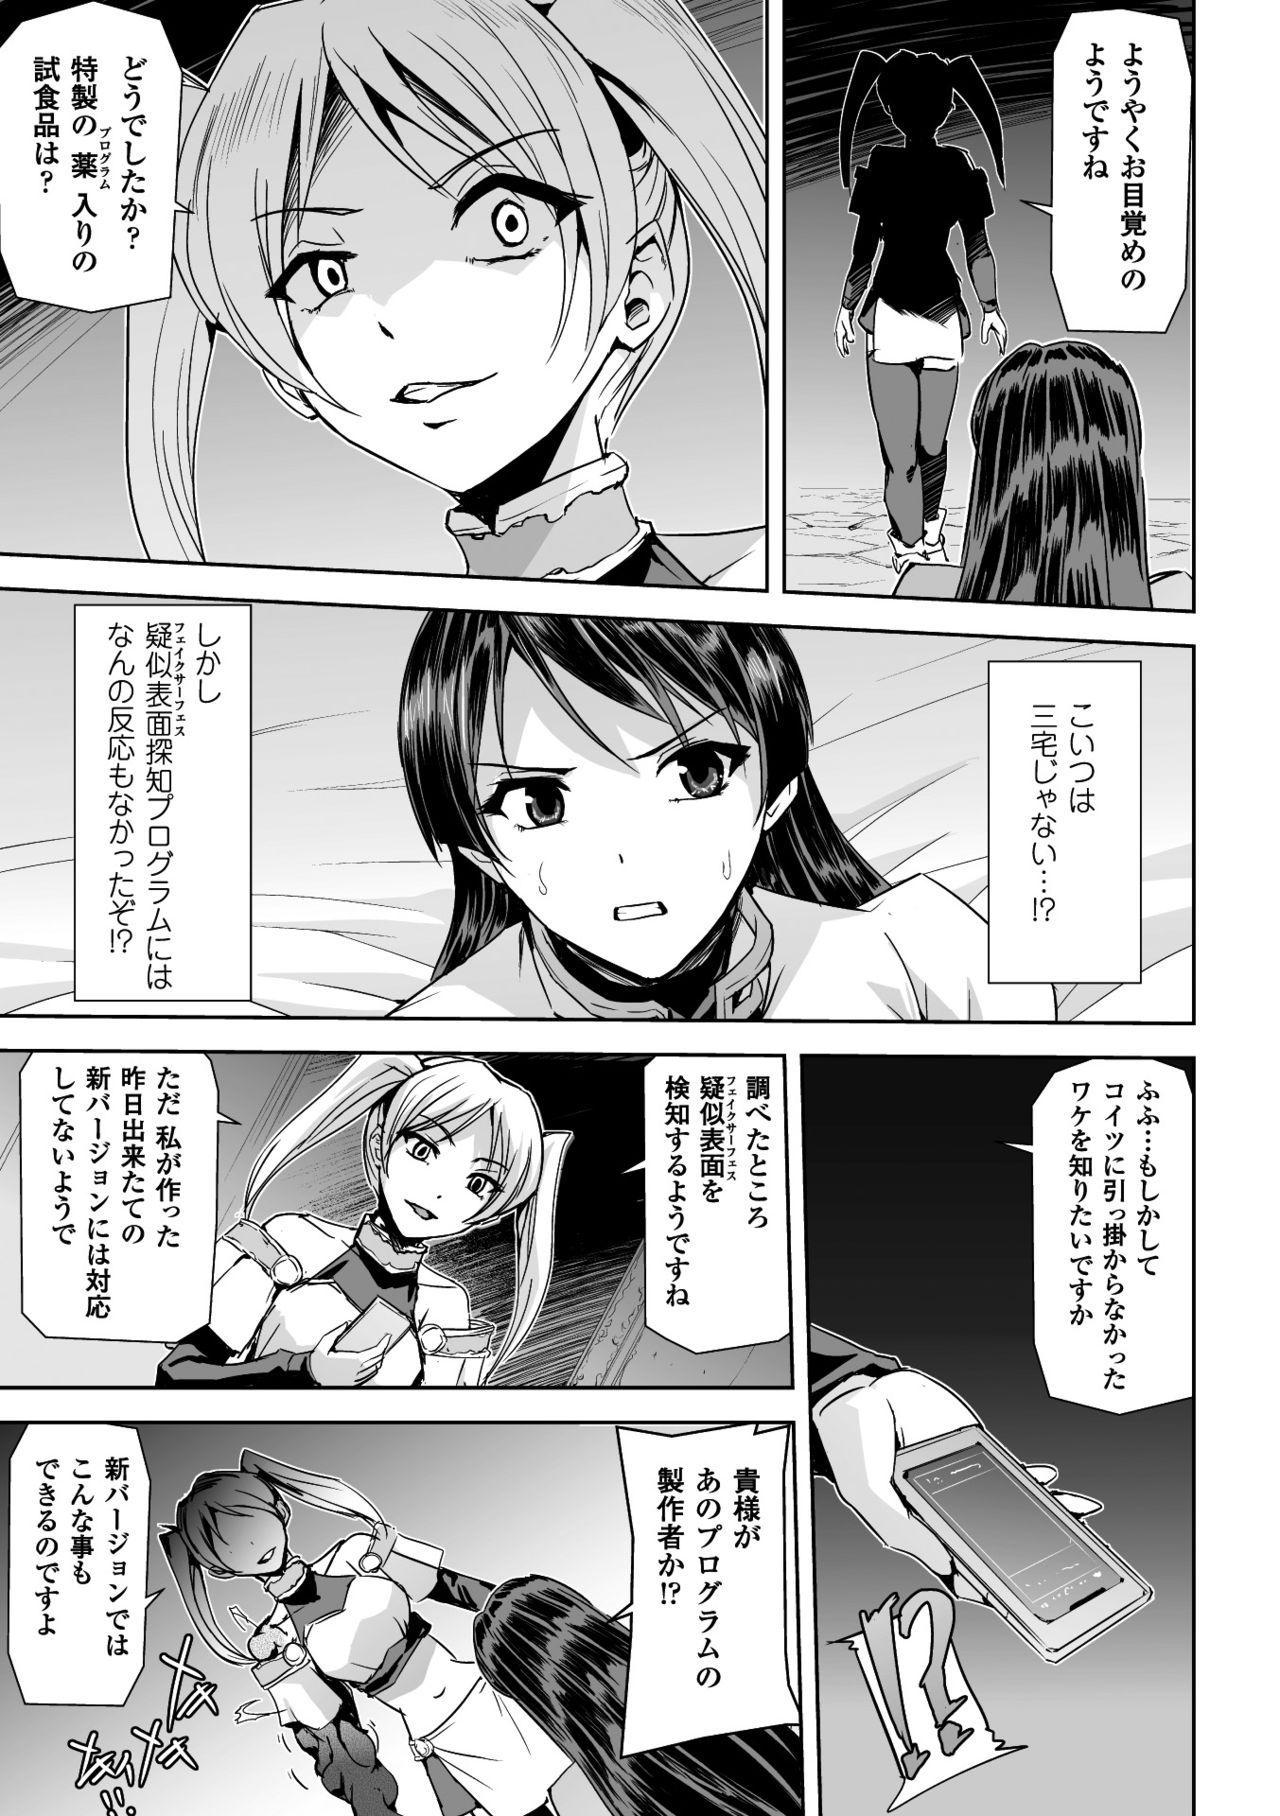 Seigi no Heroine Kangoku File Vol. 14 18